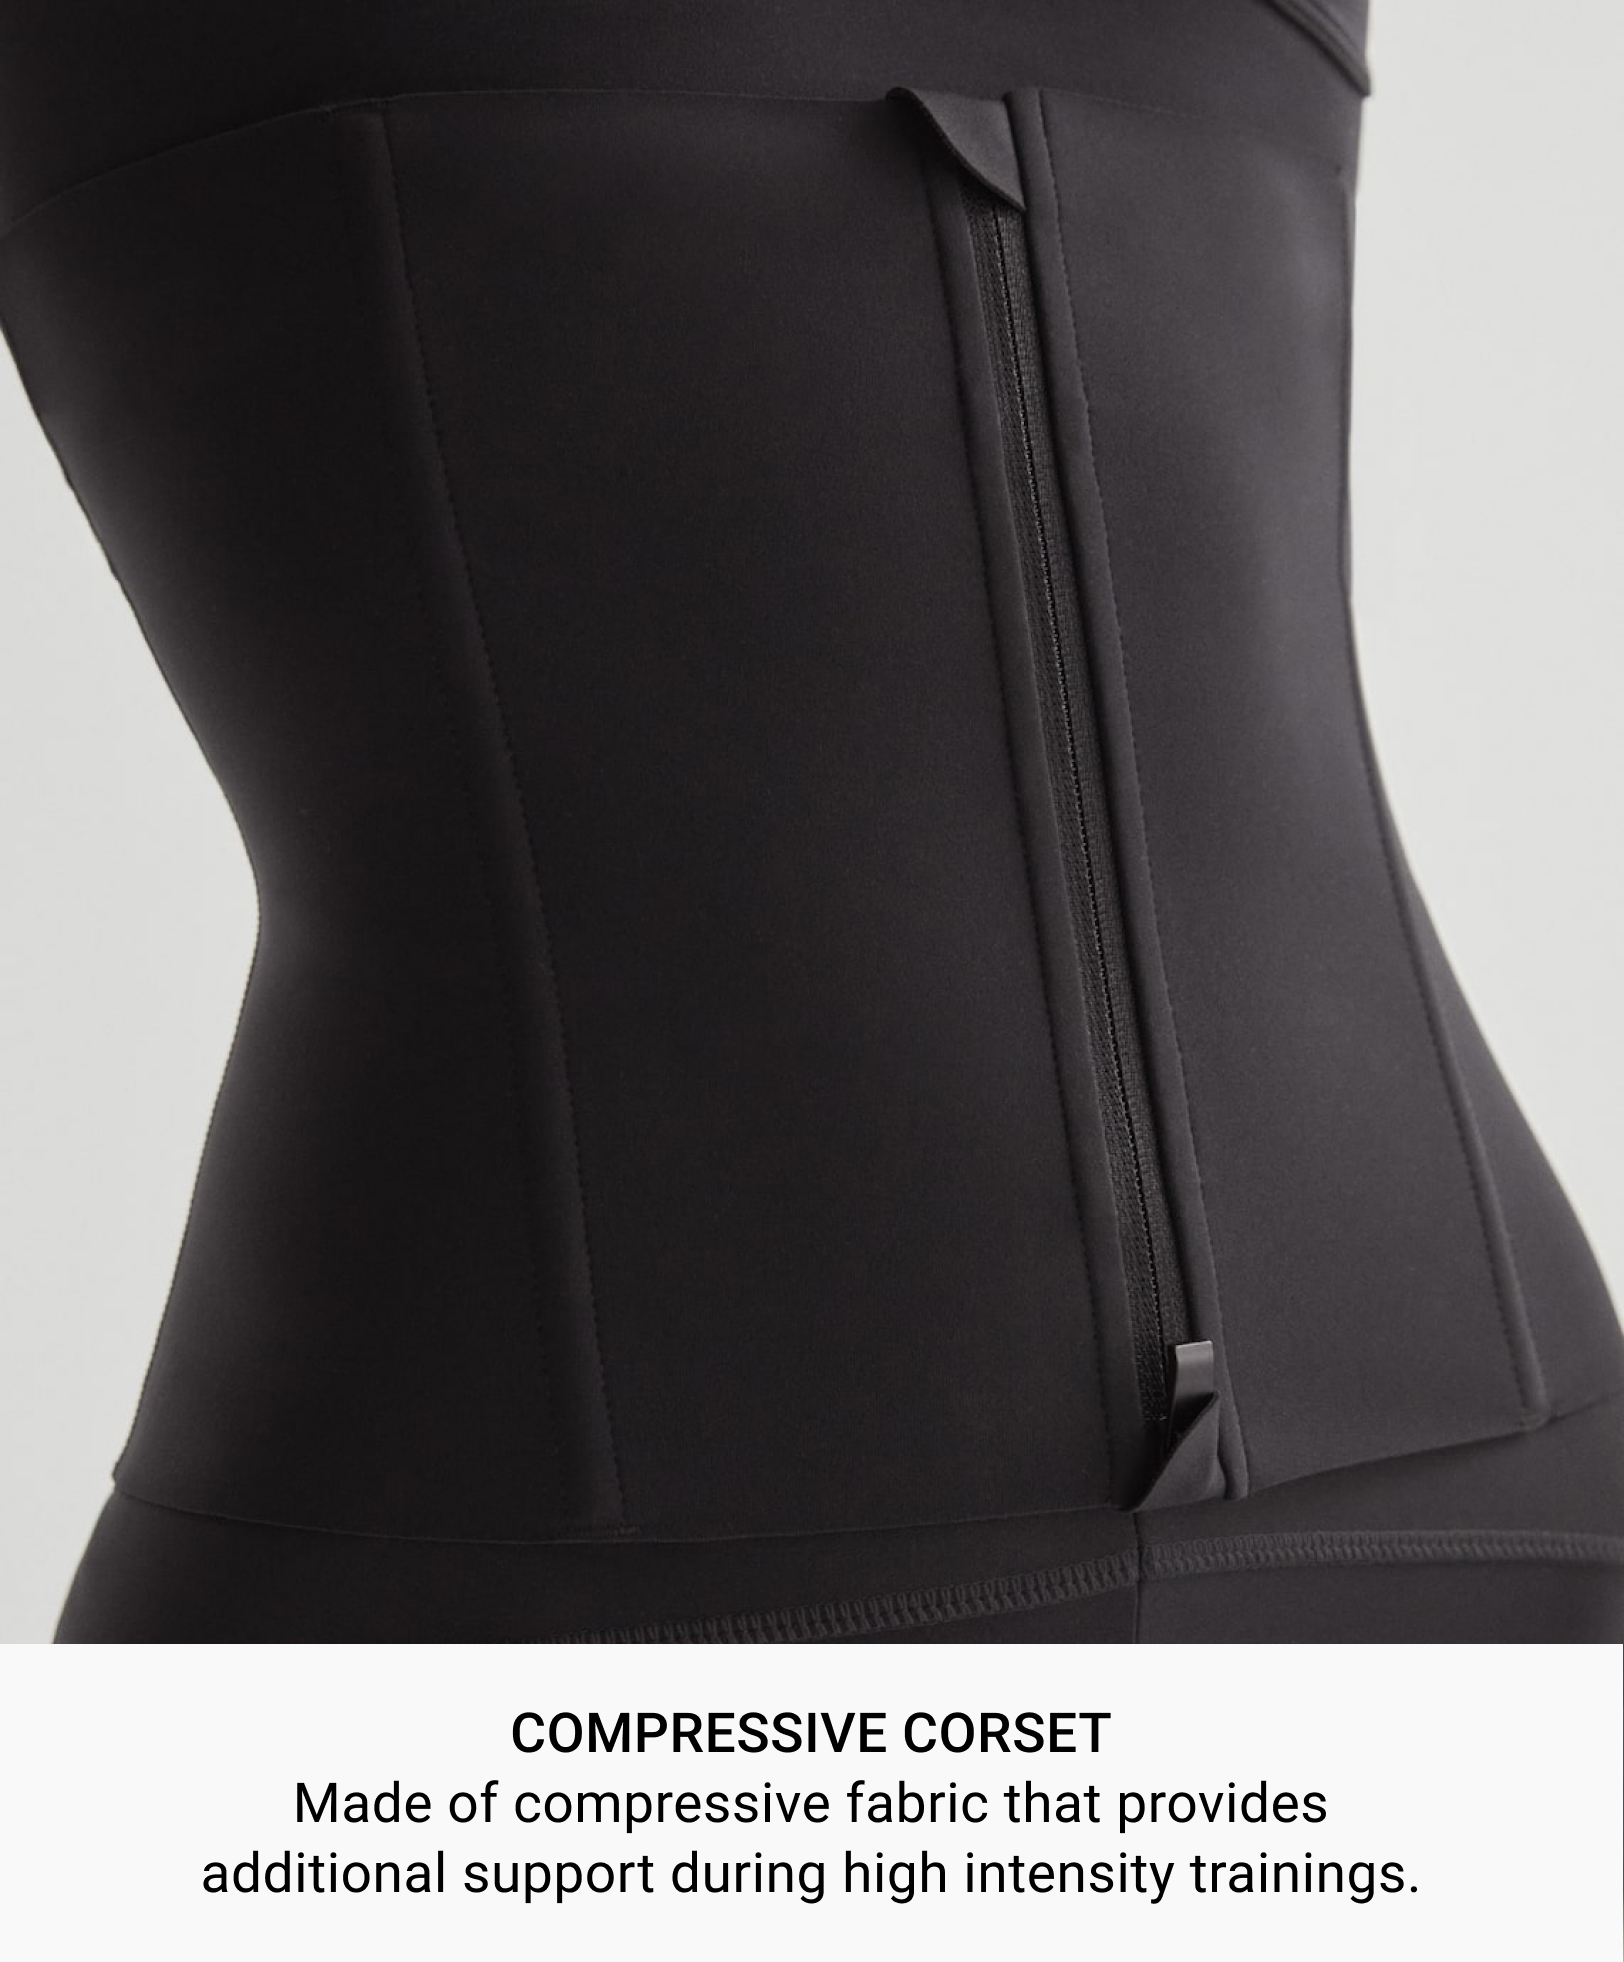 Compressive corset